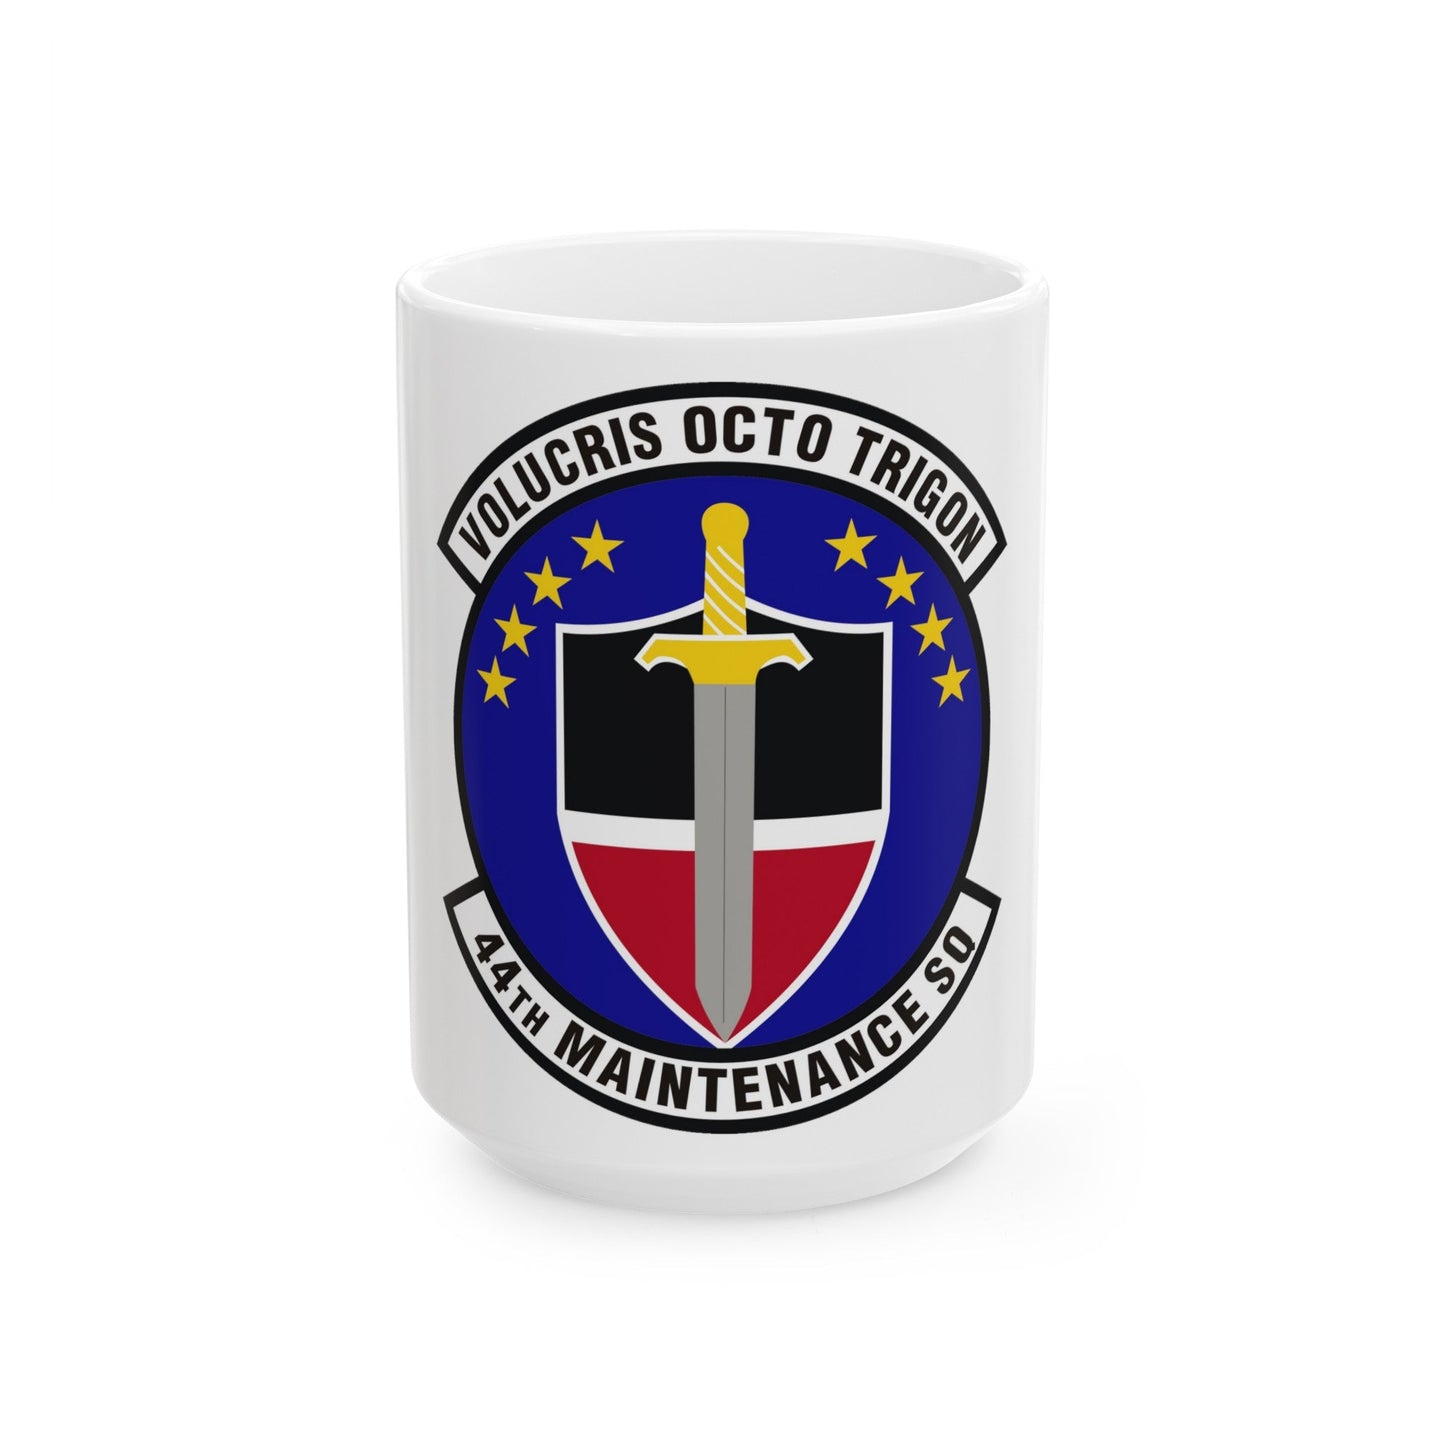 44th Maintenance Squadron (U.S. Air Force) White Coffee Mug